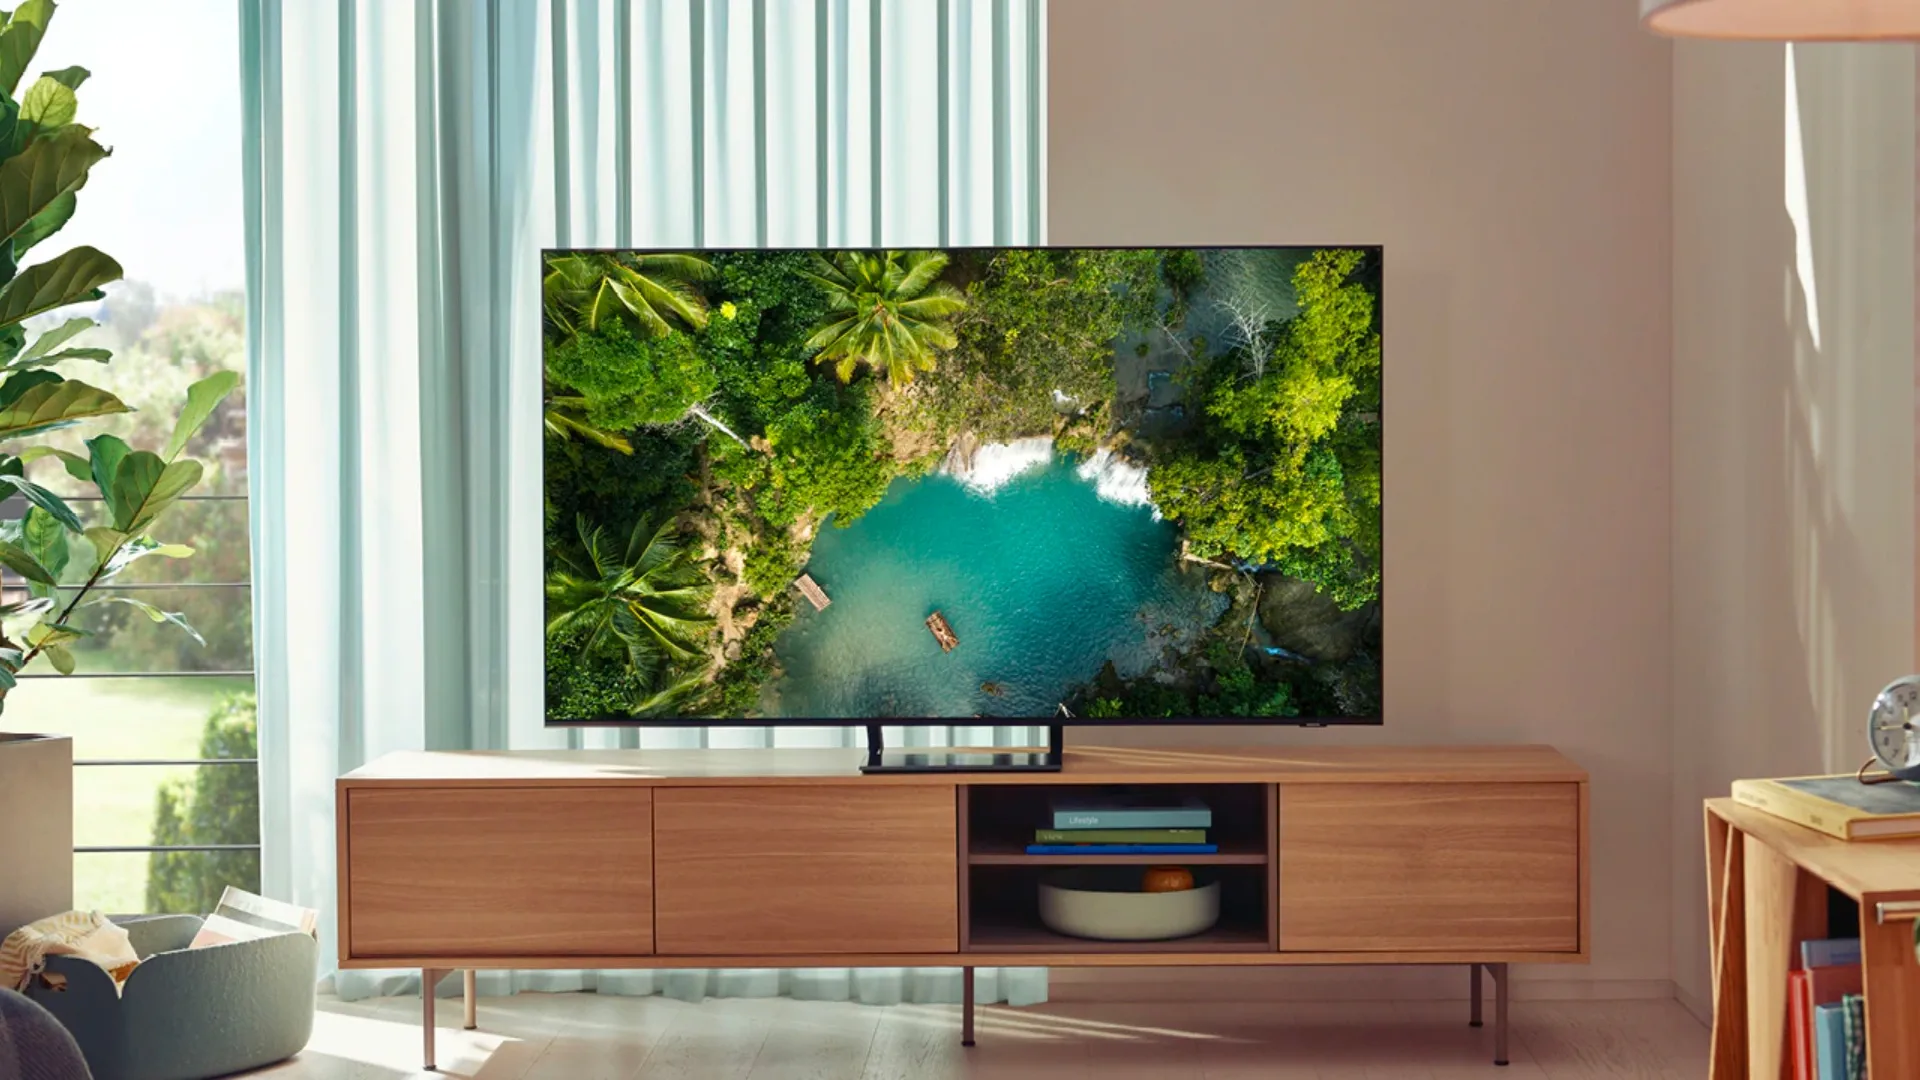 Samsung tung đặc quyền ứng dụng giải trí hấp dẫn, độc quyền ưu đãi Apple TV